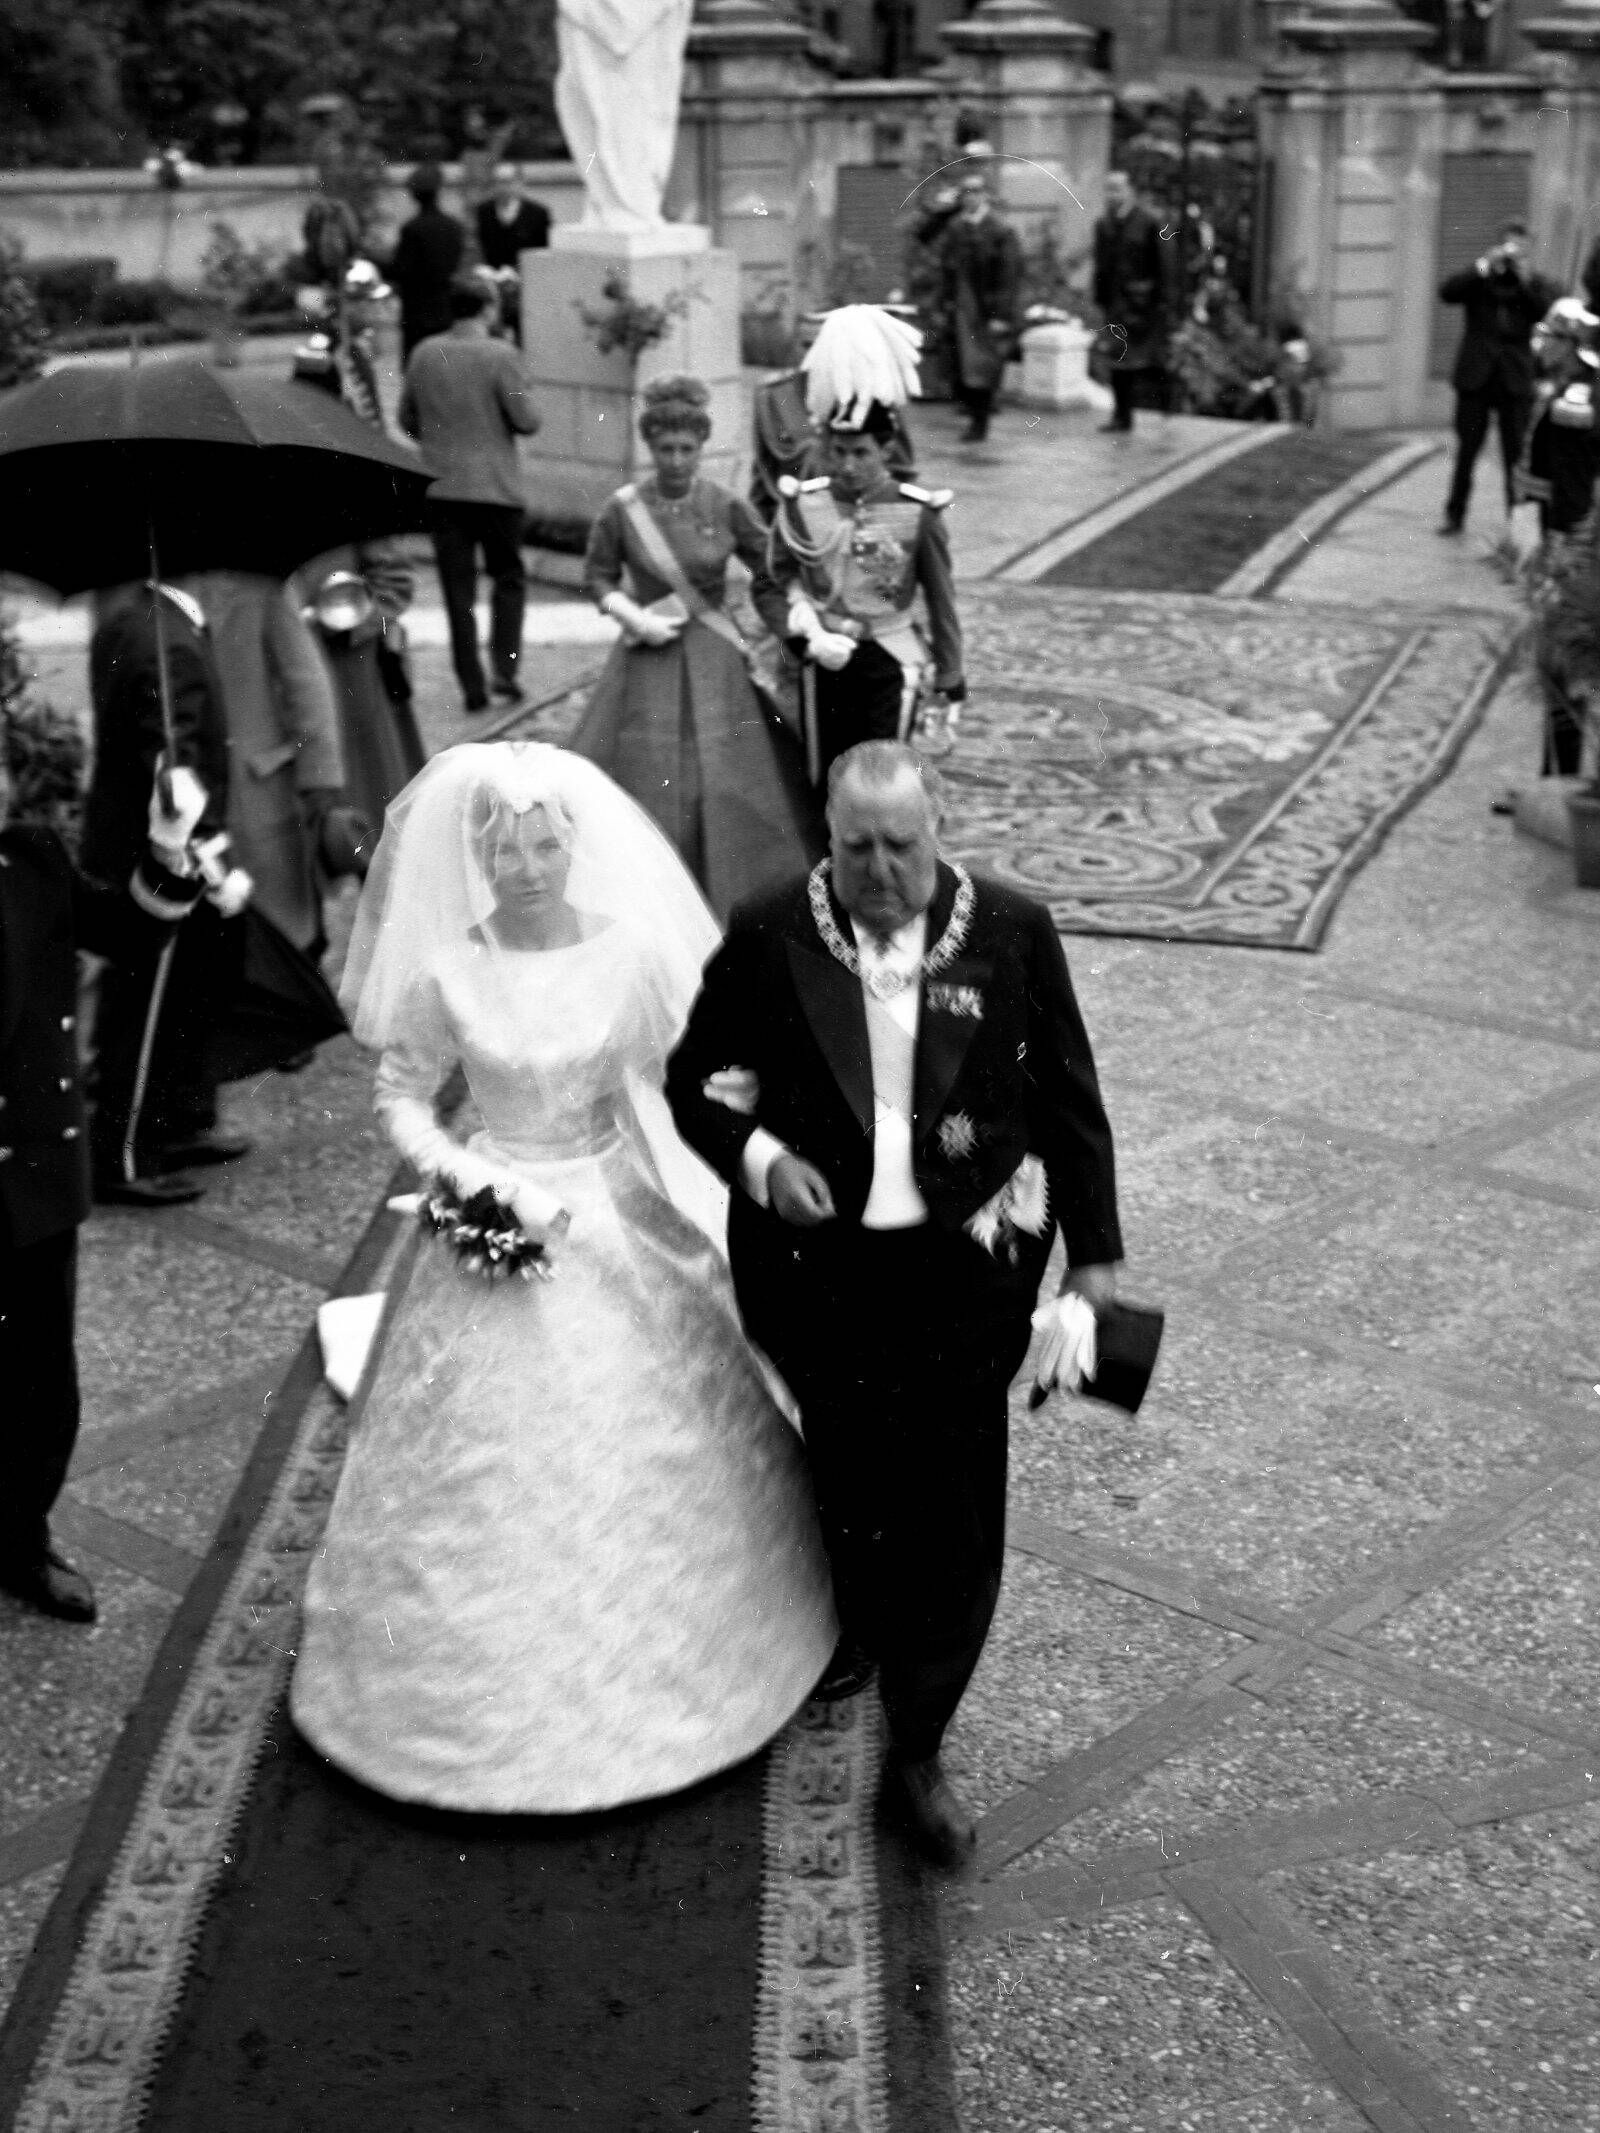 La boda de Teresa de Borbón-Dos Sicilias y Borbón-Parma con Íñigo Moreno y de Arteaga, en abril de 1961. (Europa Press)